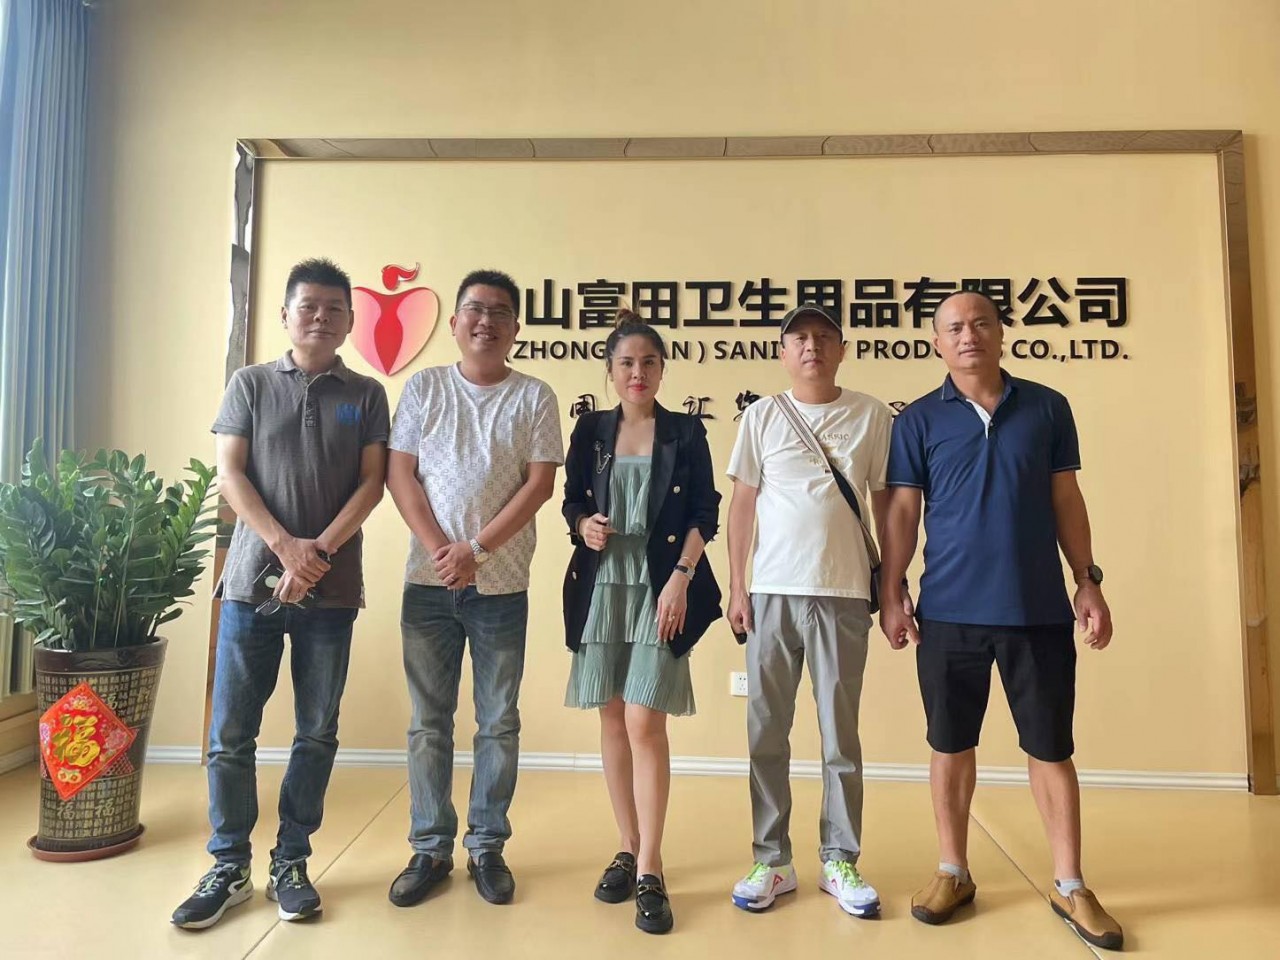 Tiến sĩ Việt chia sẻ “kinh nghiệm” làm việc với đối tác Trung Quốc